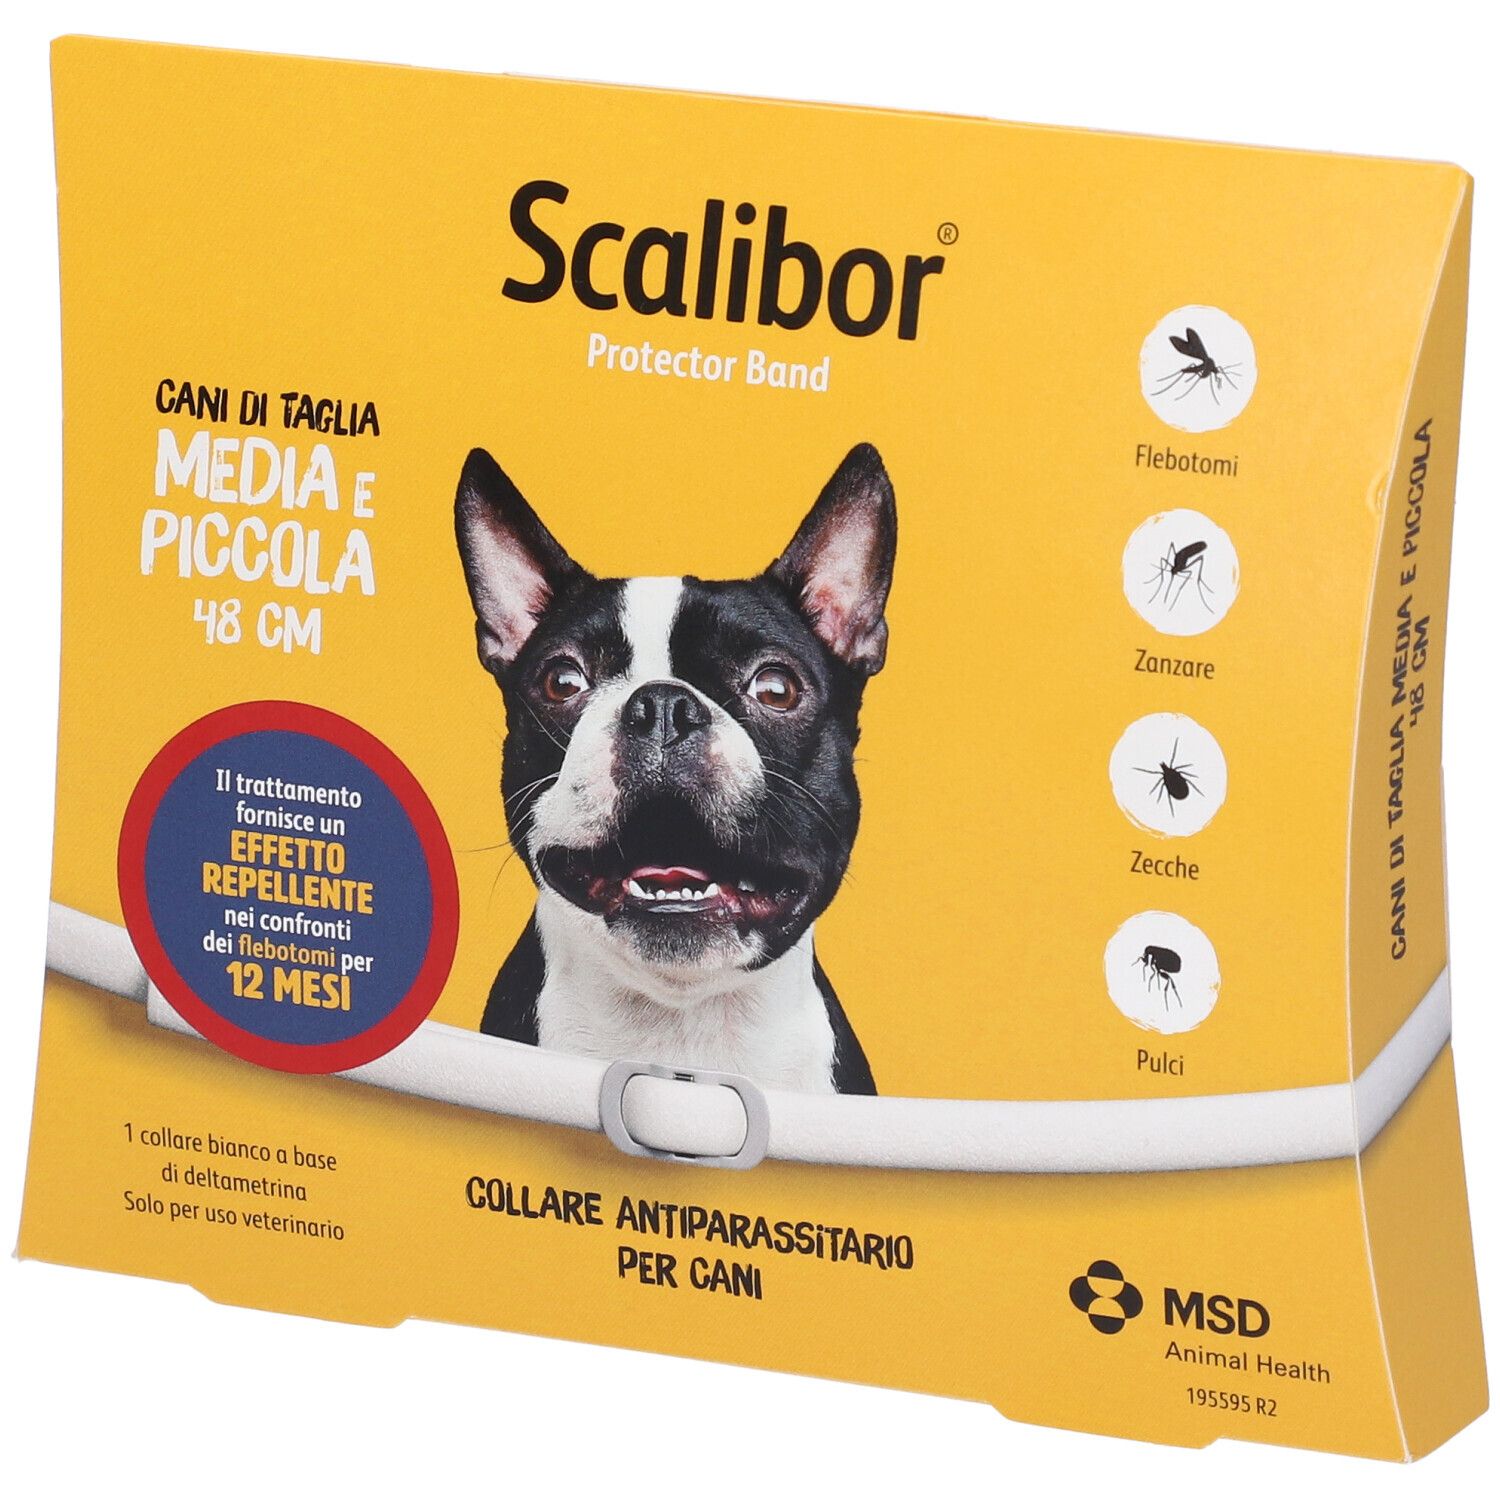 msd animal health srl scalibor protectorband collare antiparassitario per cani taglia medio/piccola 48cm